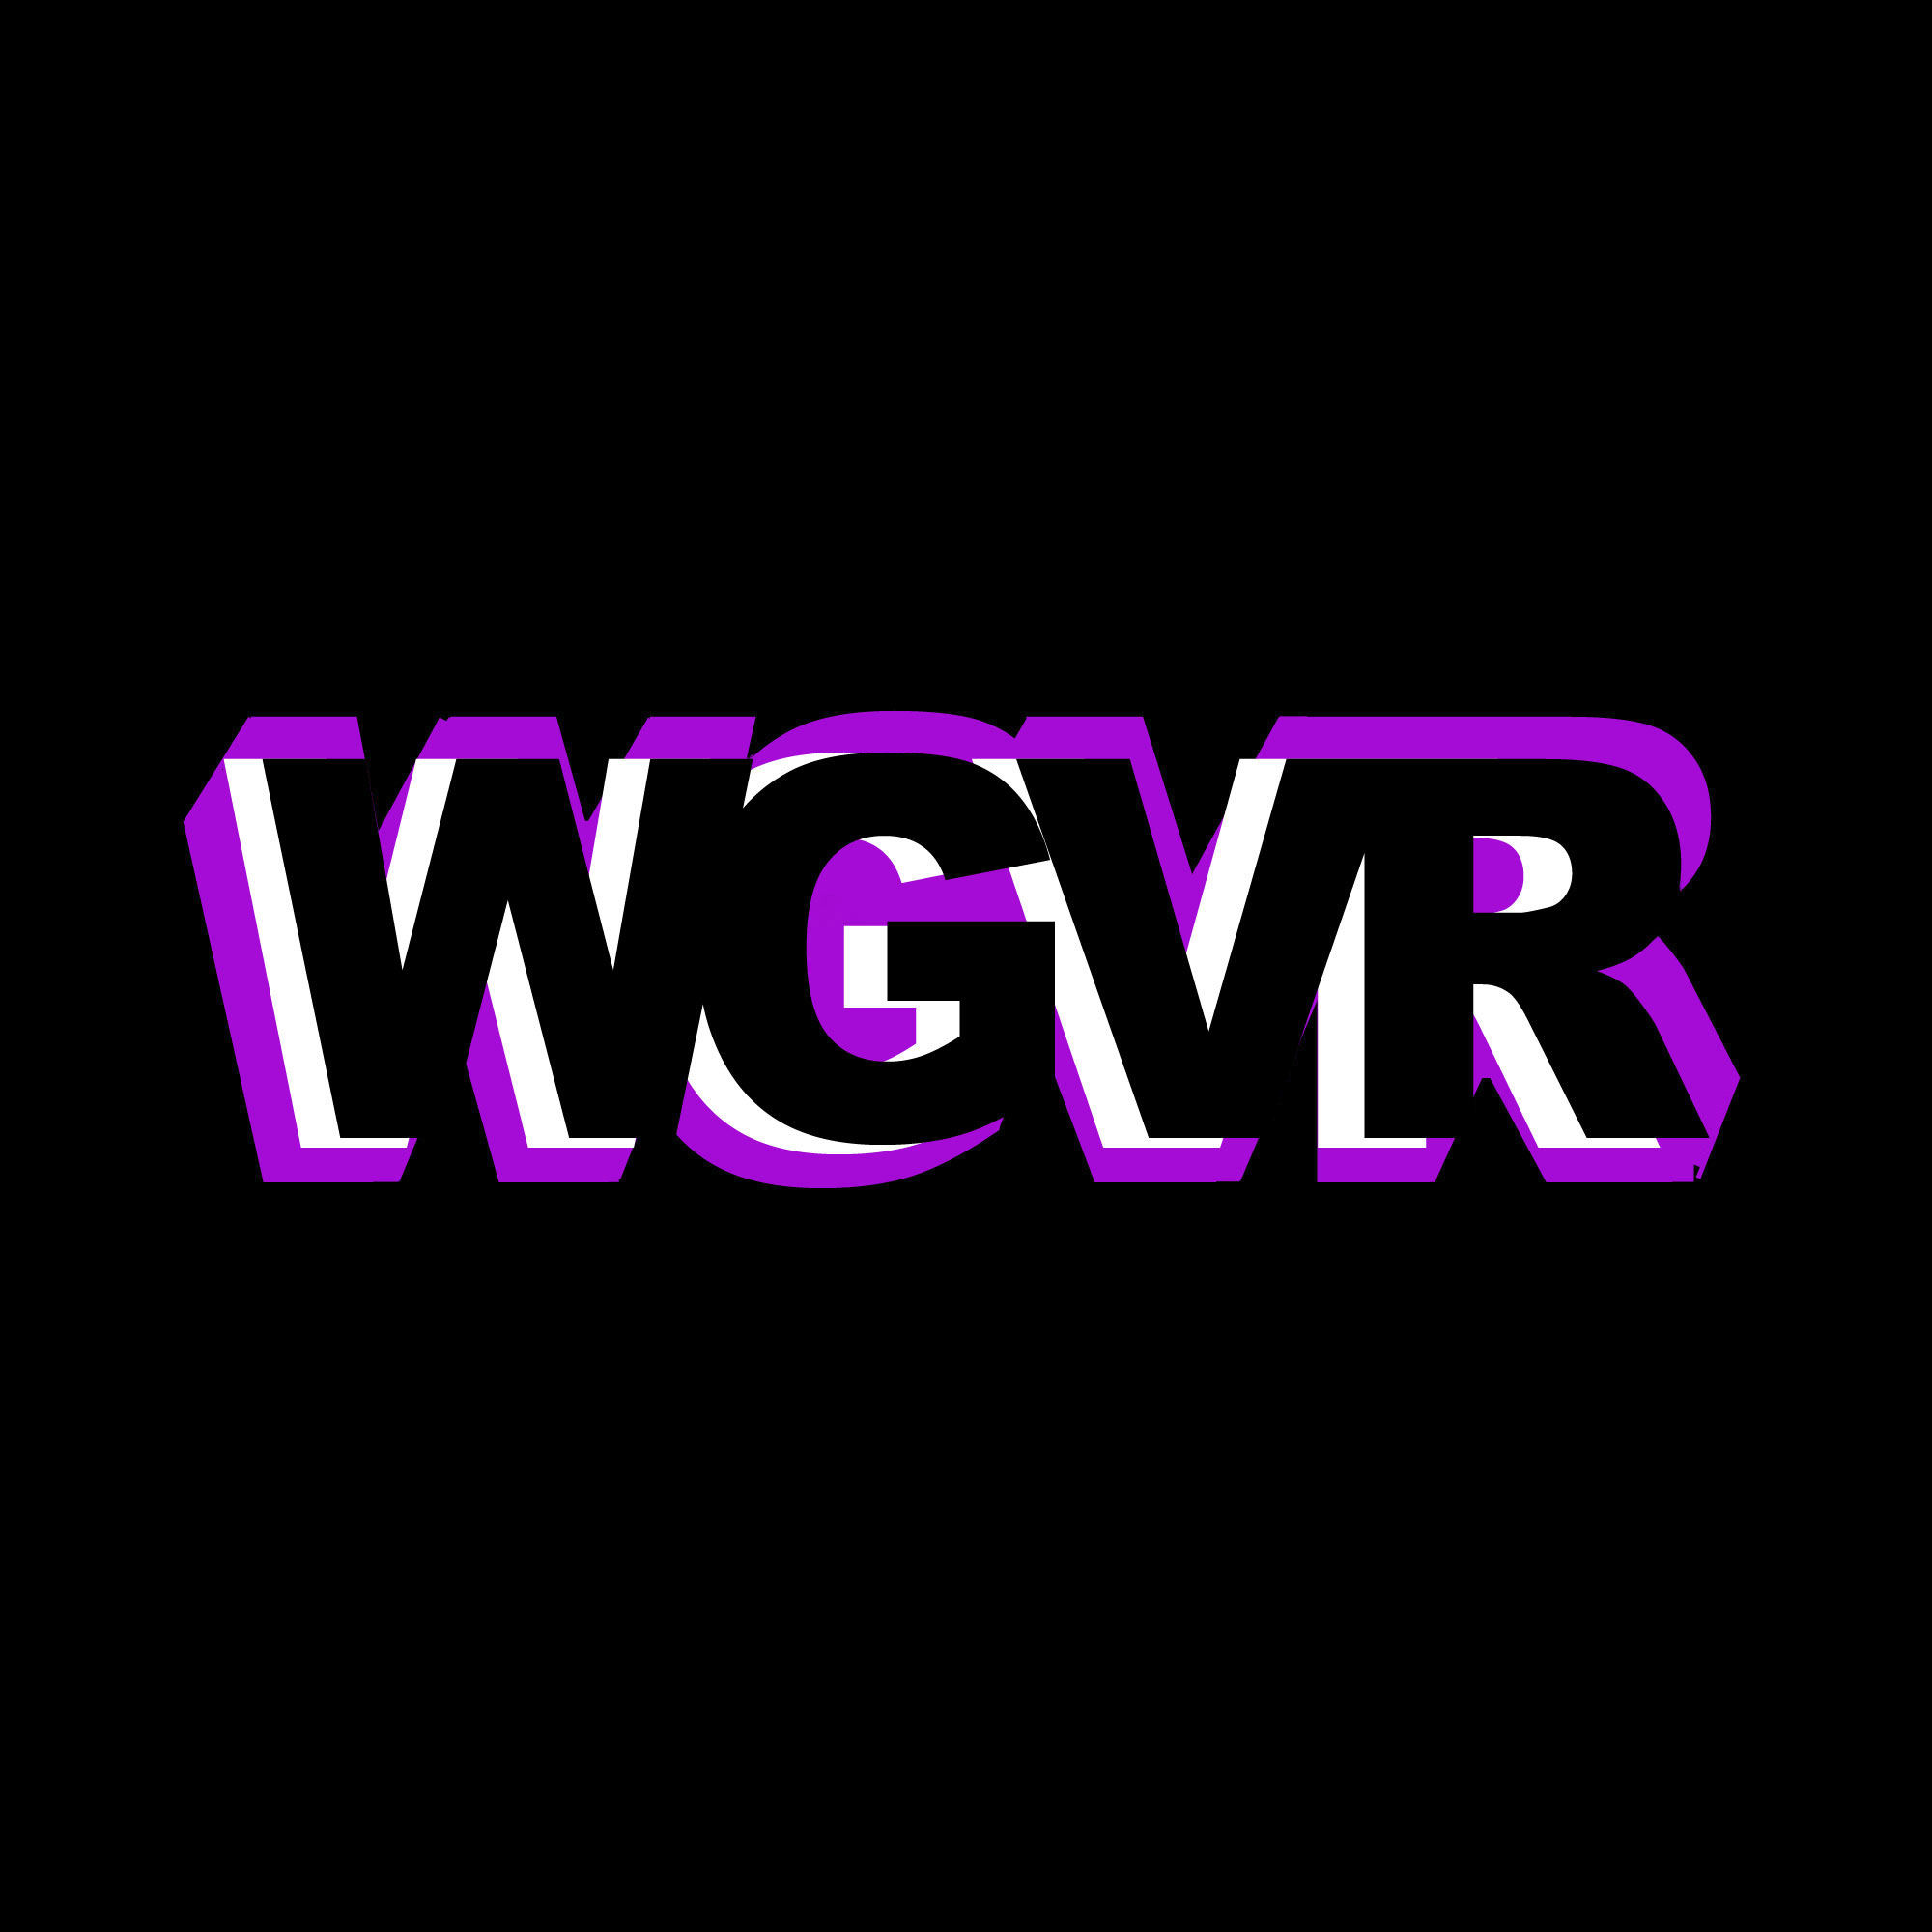 WGVR Radio NY